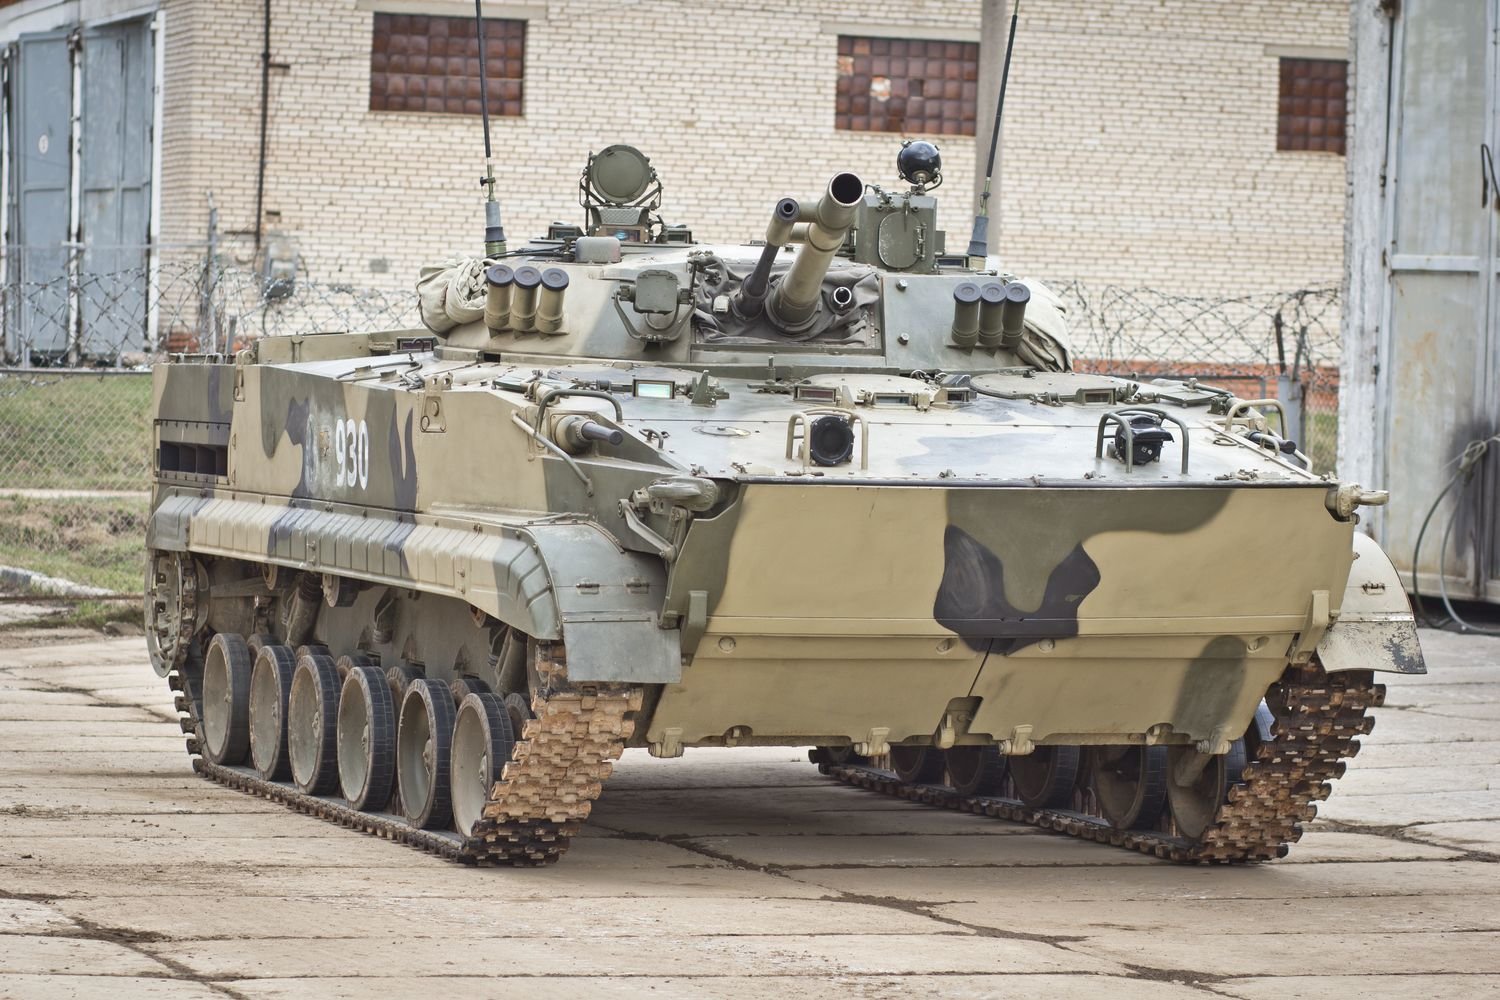 俄罗斯bmp-3步兵战车是俄罗斯第三代履带式步兵战车,80年代初开始研制